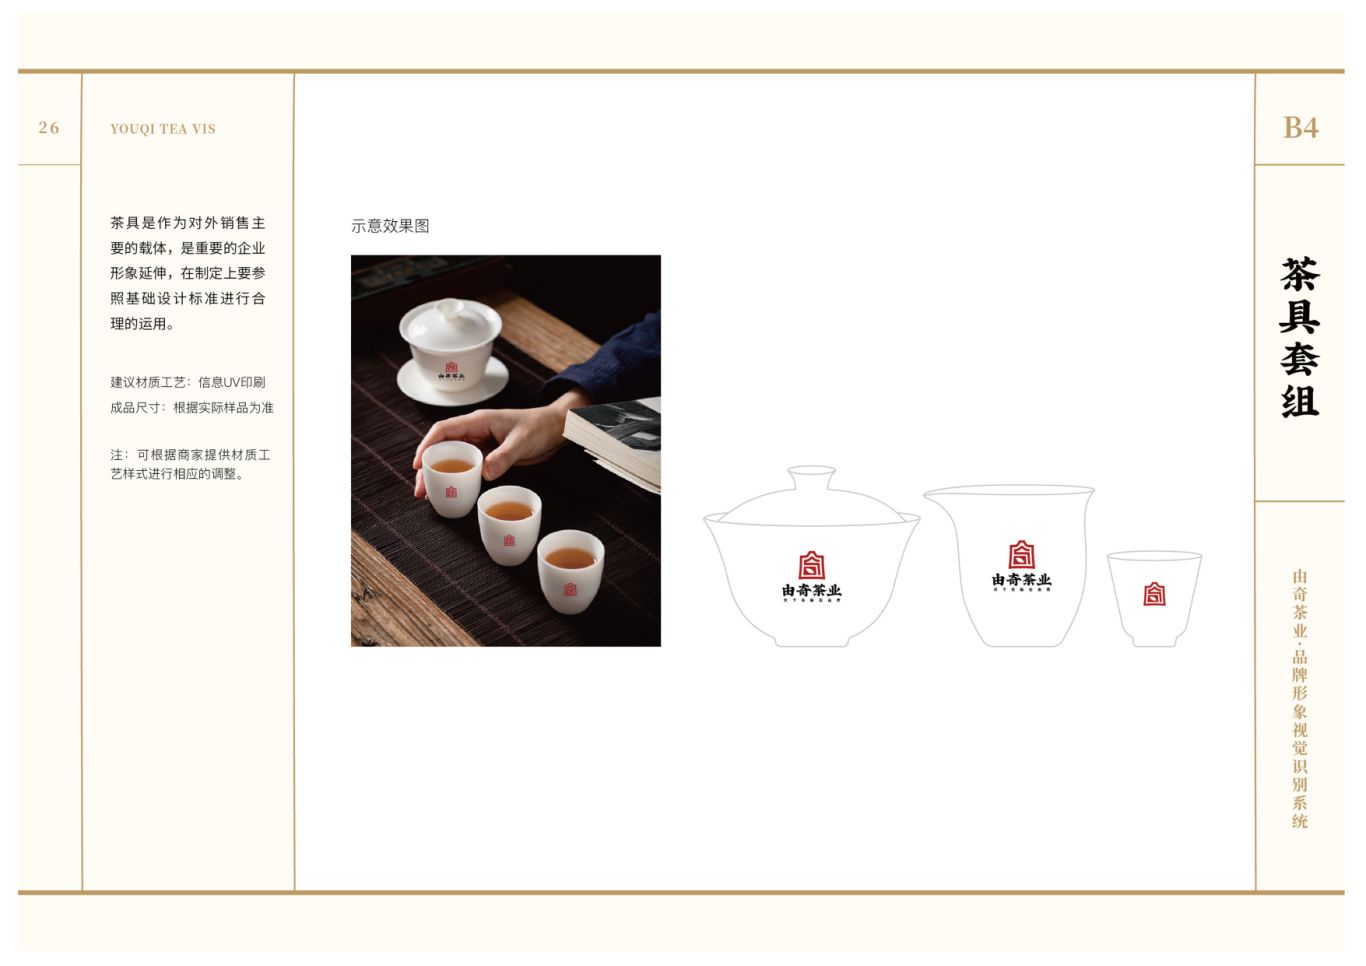 由奇茶业VIS品牌设计图26